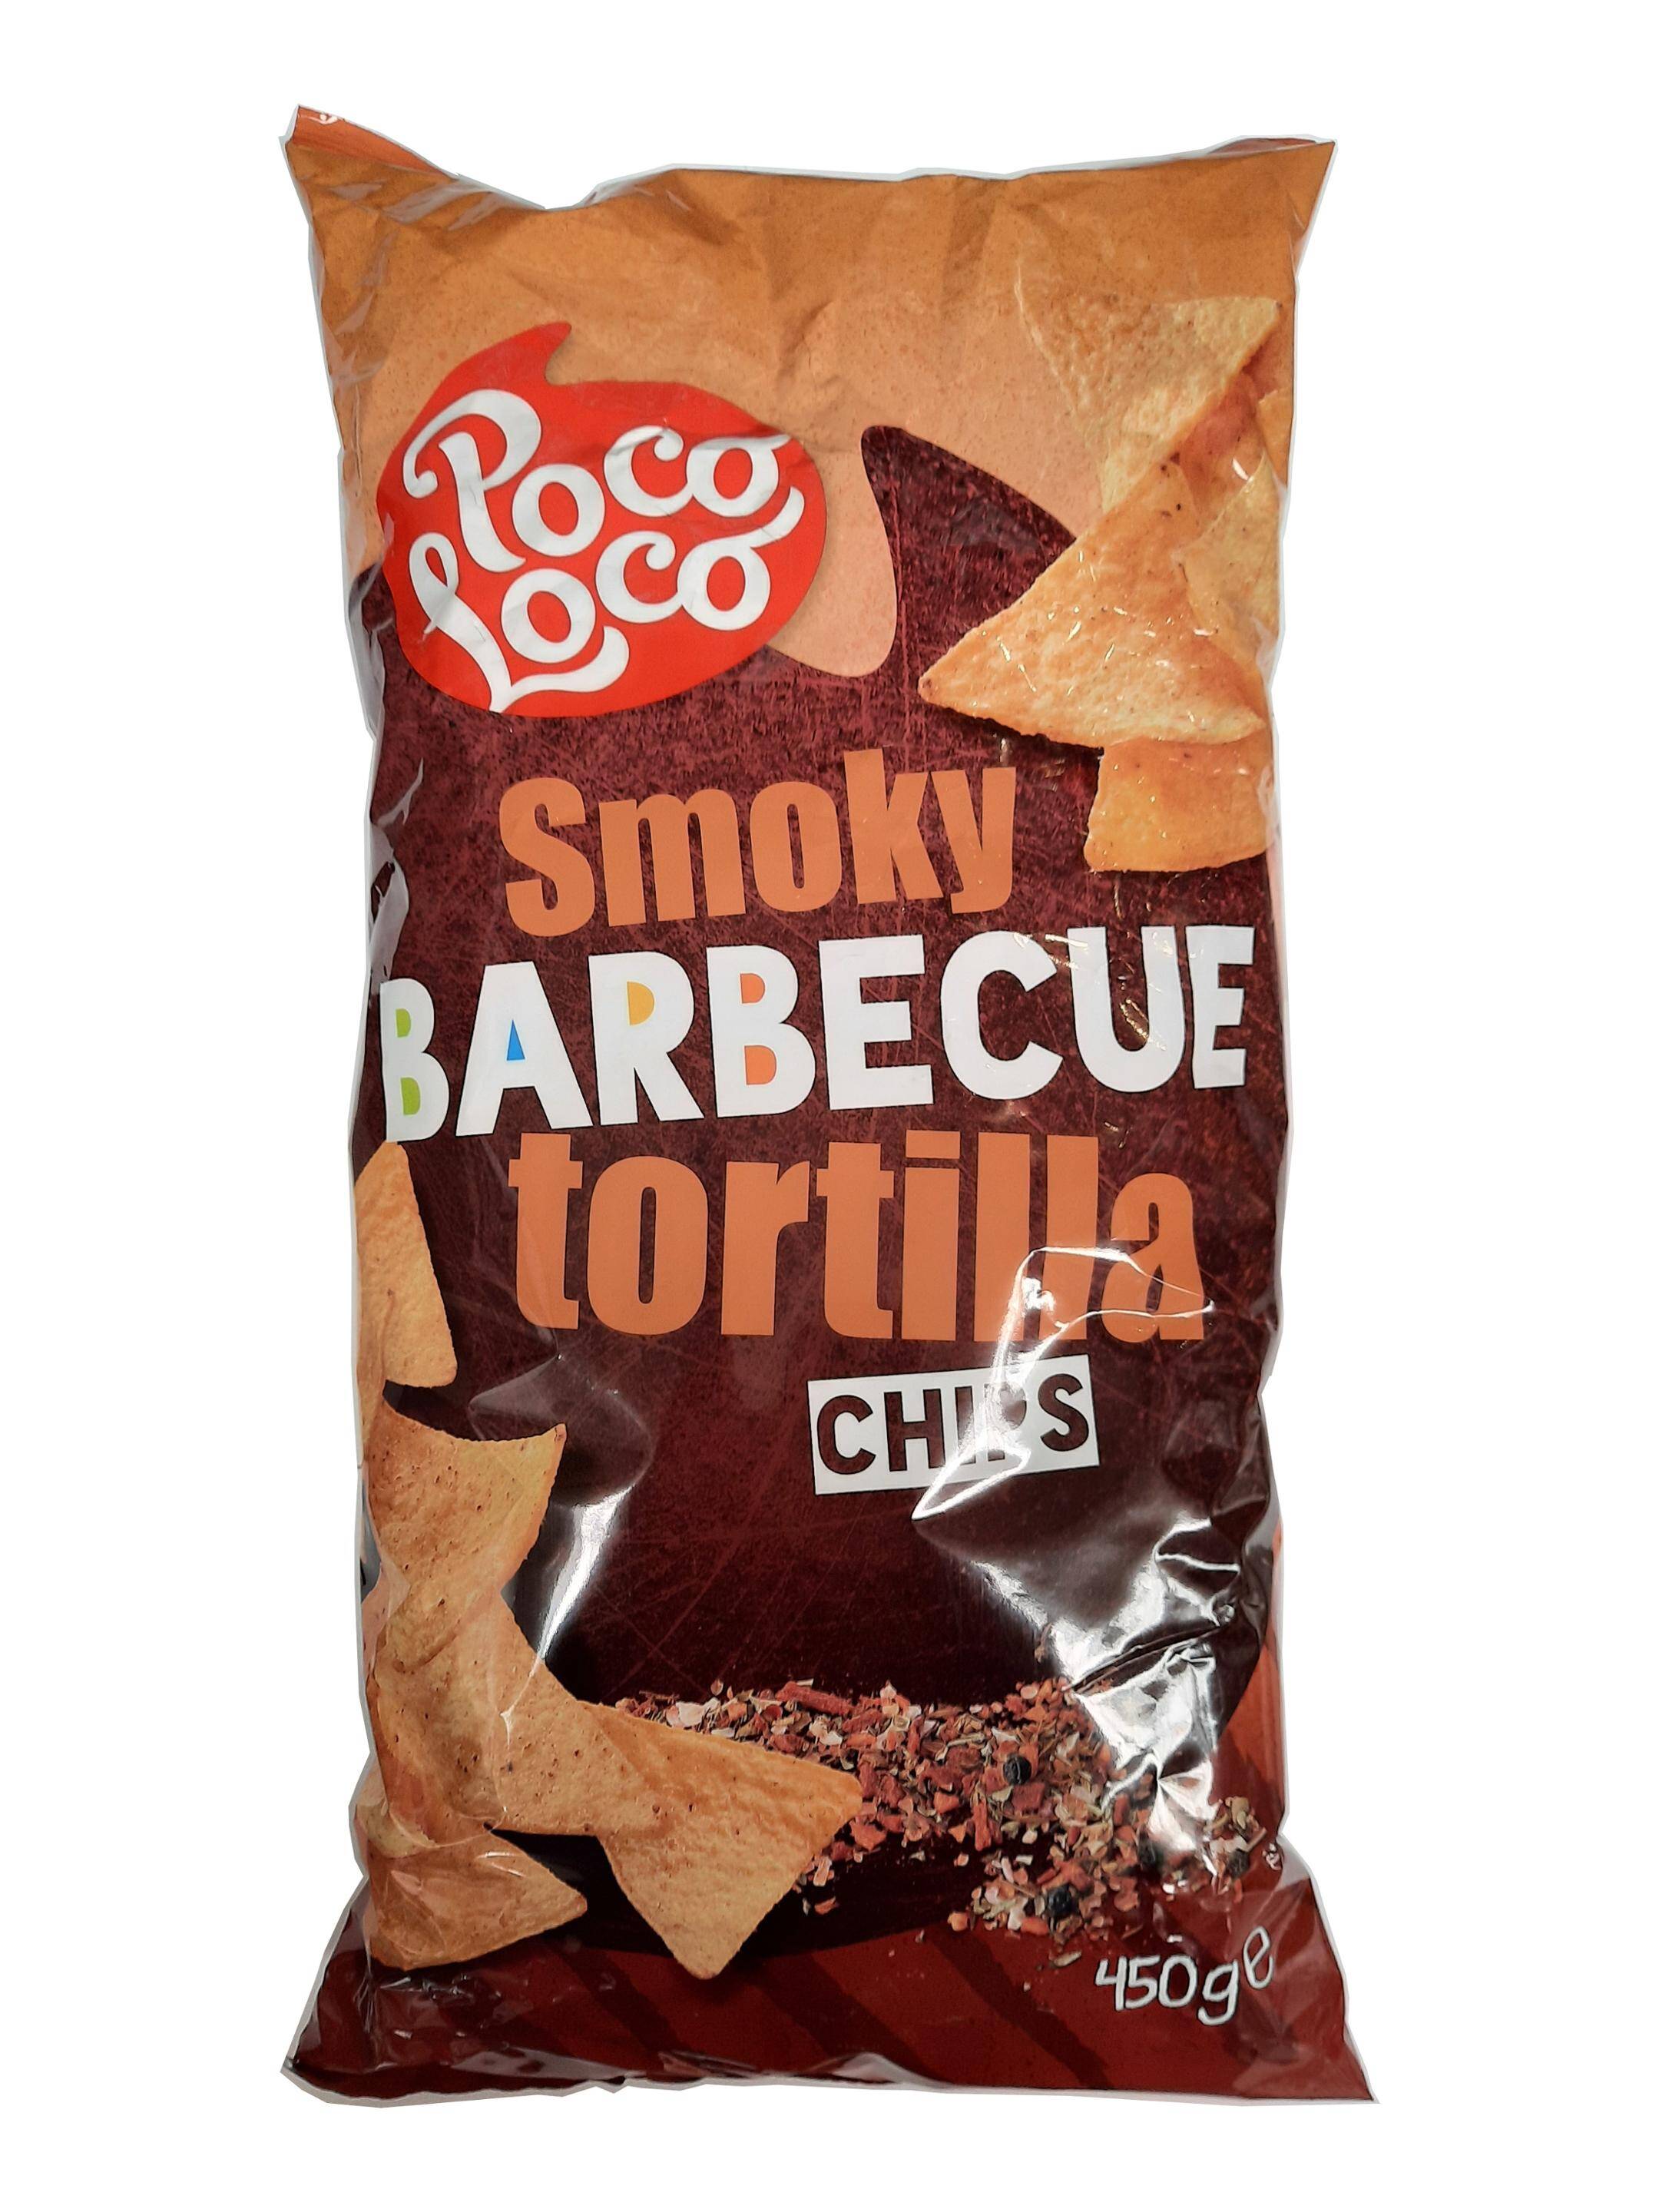 Tortilla chips Smoky Barbecue 450g/12 Poco Loco p